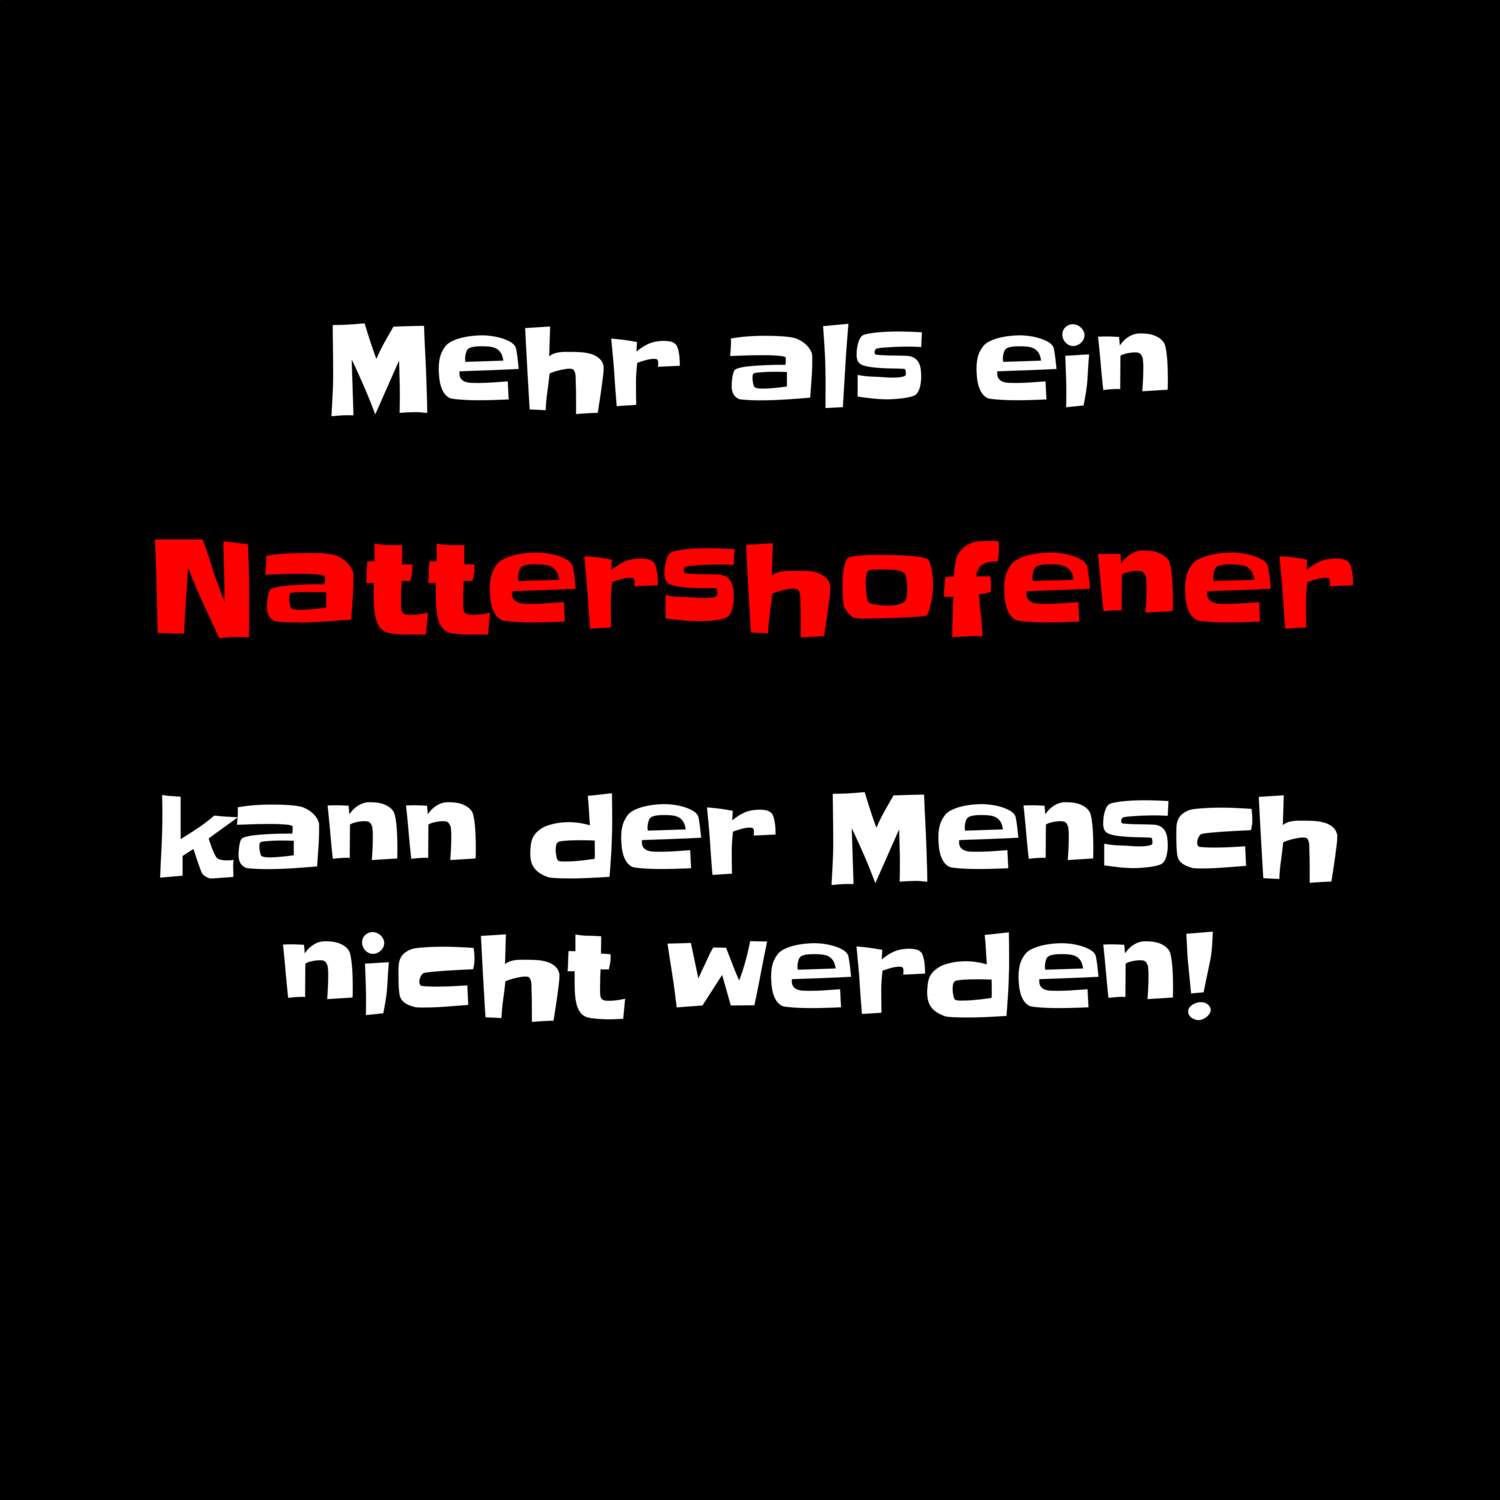 Nattershofen T-Shirt »Mehr als ein«